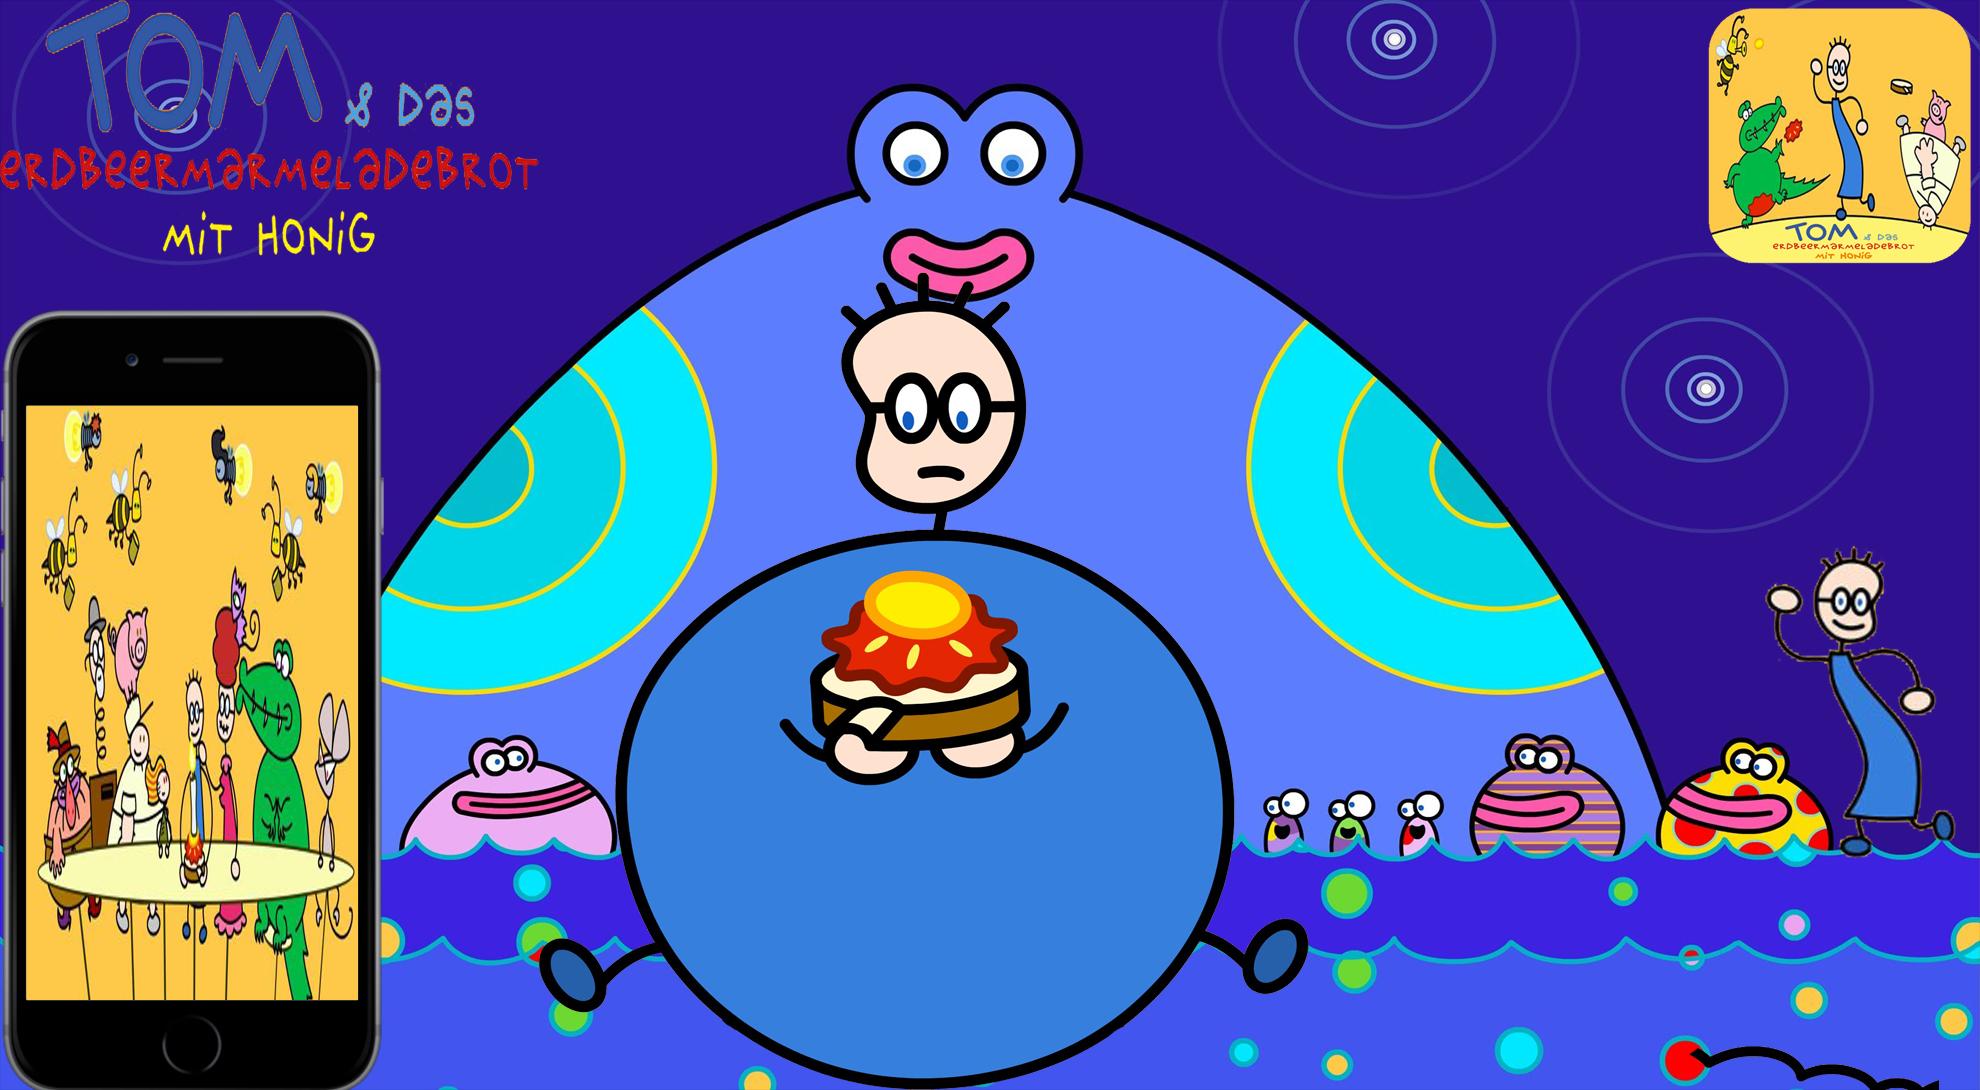 Tom Und Das Erdbeermarmeladebrot Mit Honig Spiel For Android Apk Download